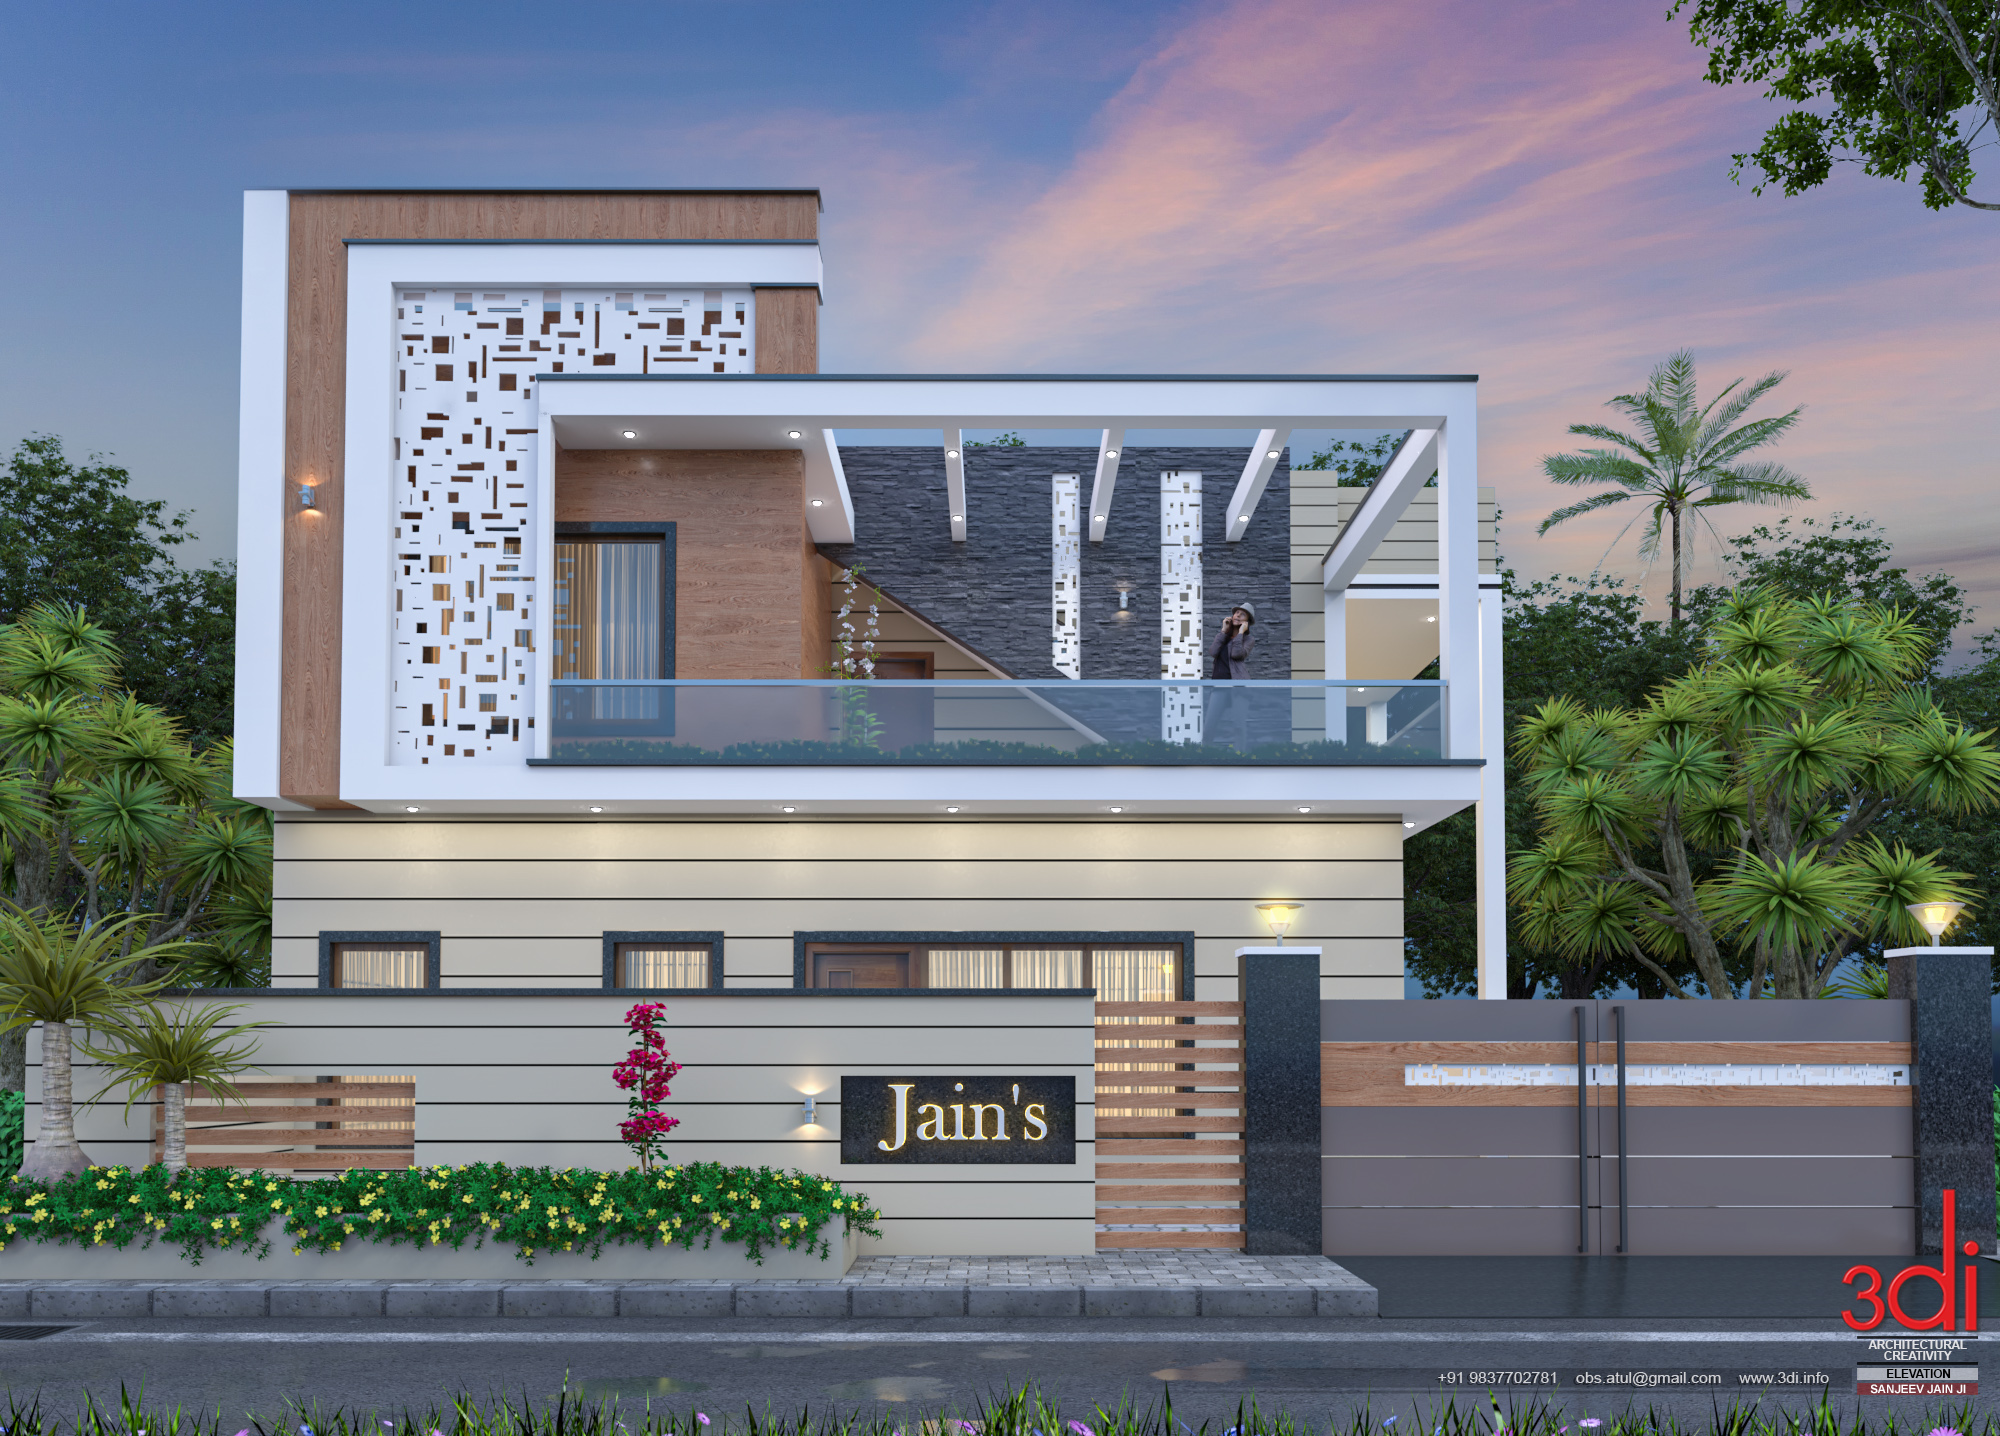 Jain's Residence